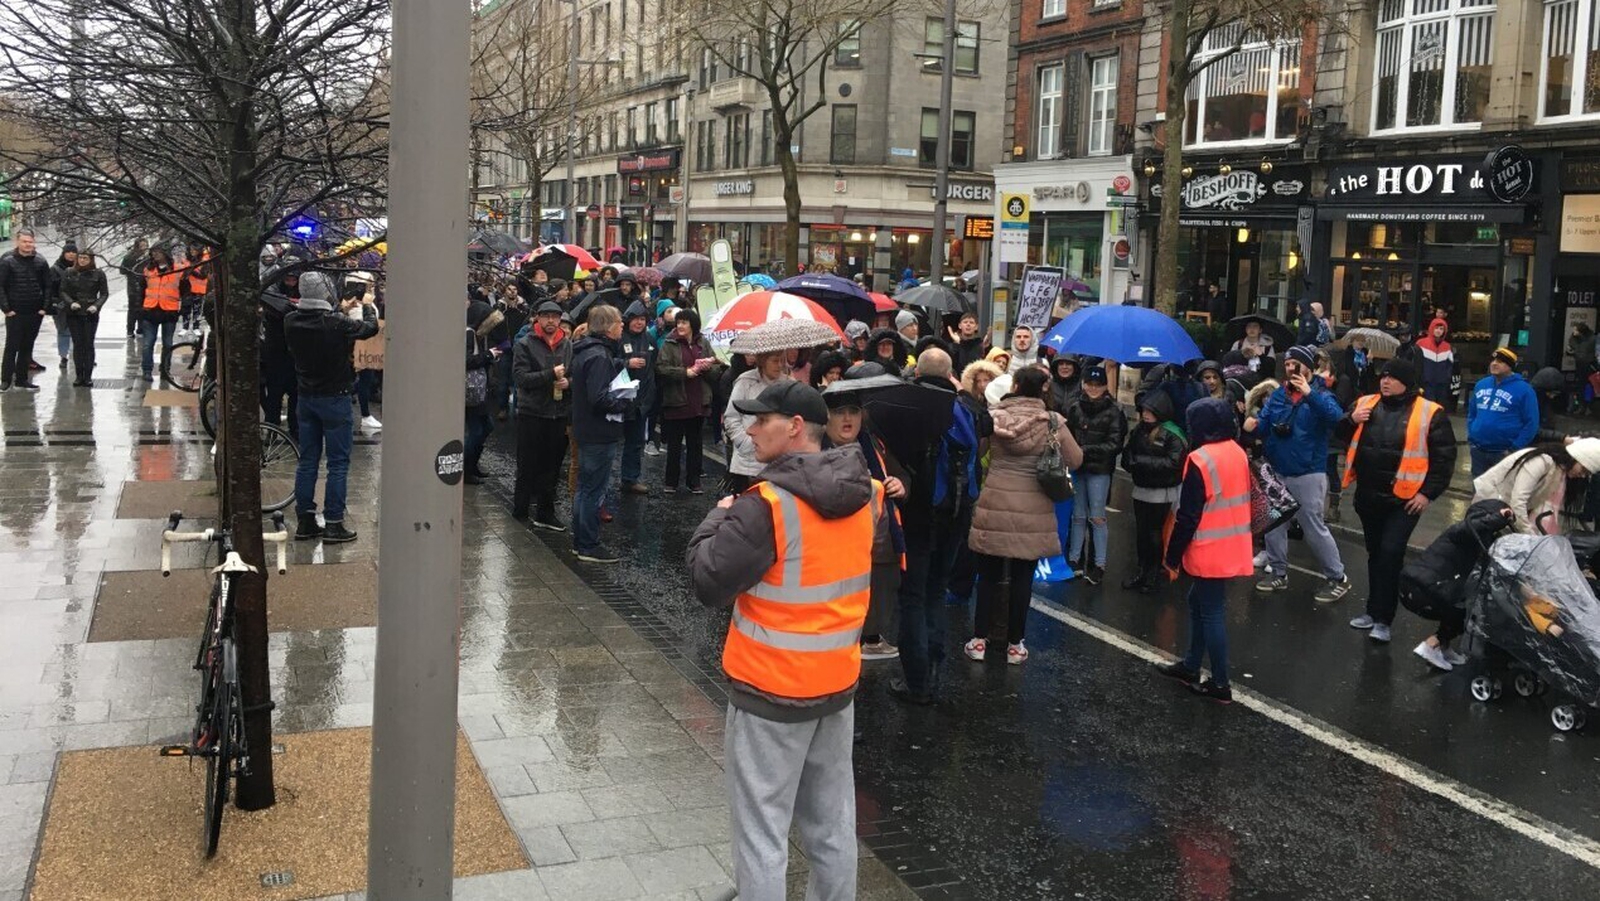 Hundreds protest in Dublin over homelessness